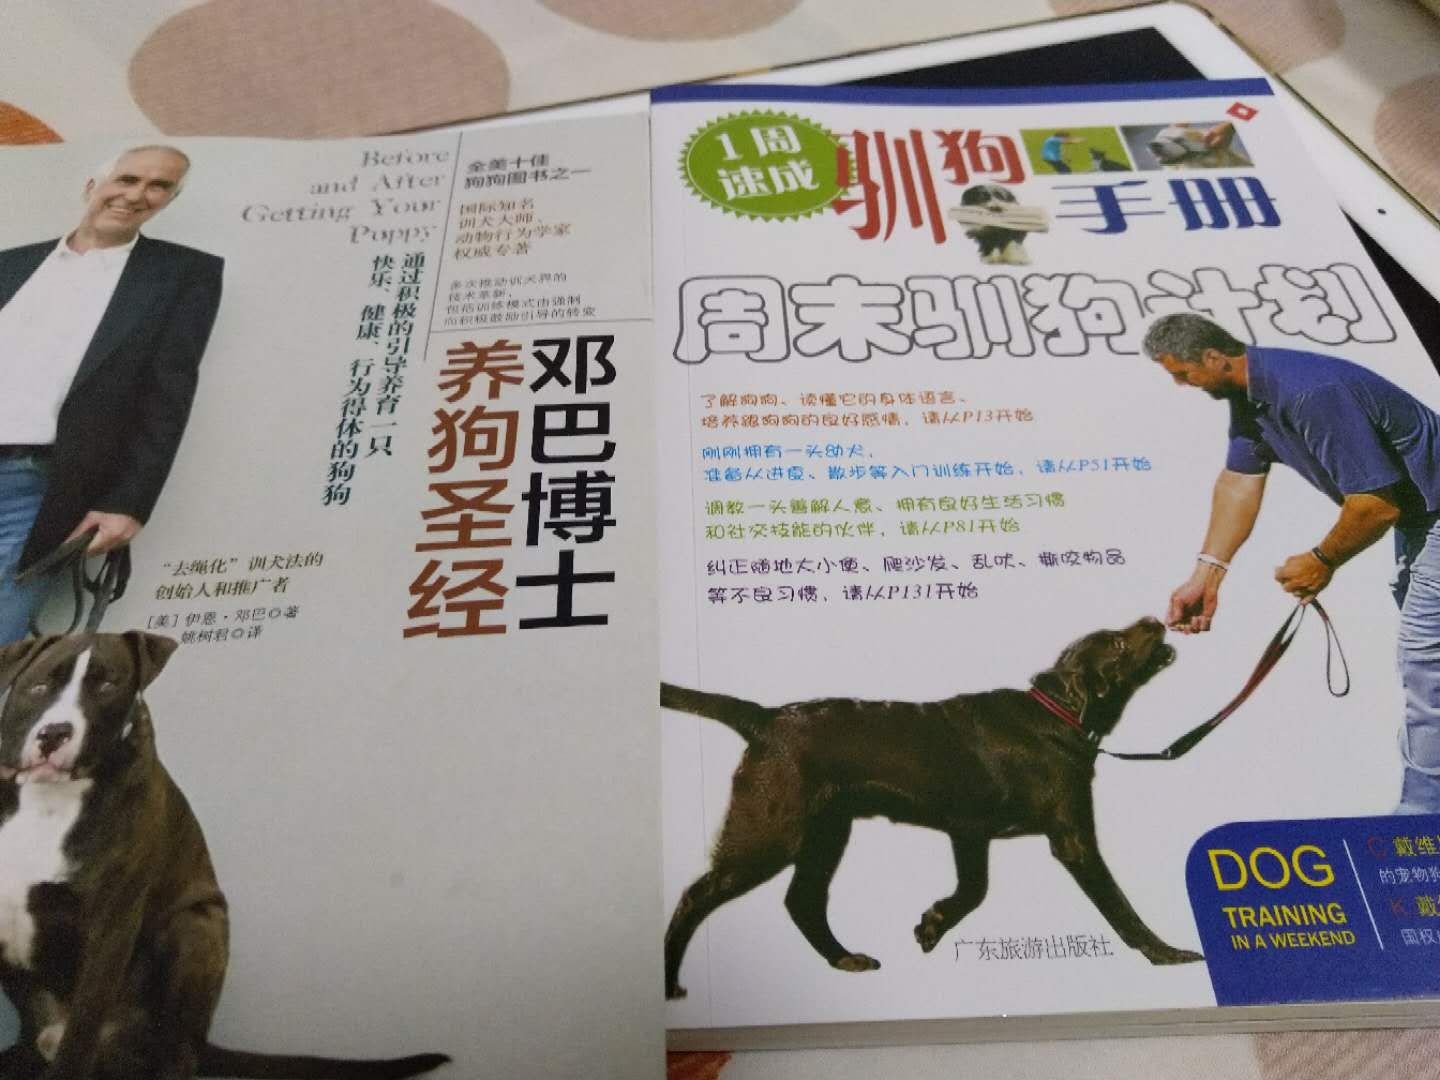 很实用的书籍，对于养好狗狗很有帮助。质量也好，好评！